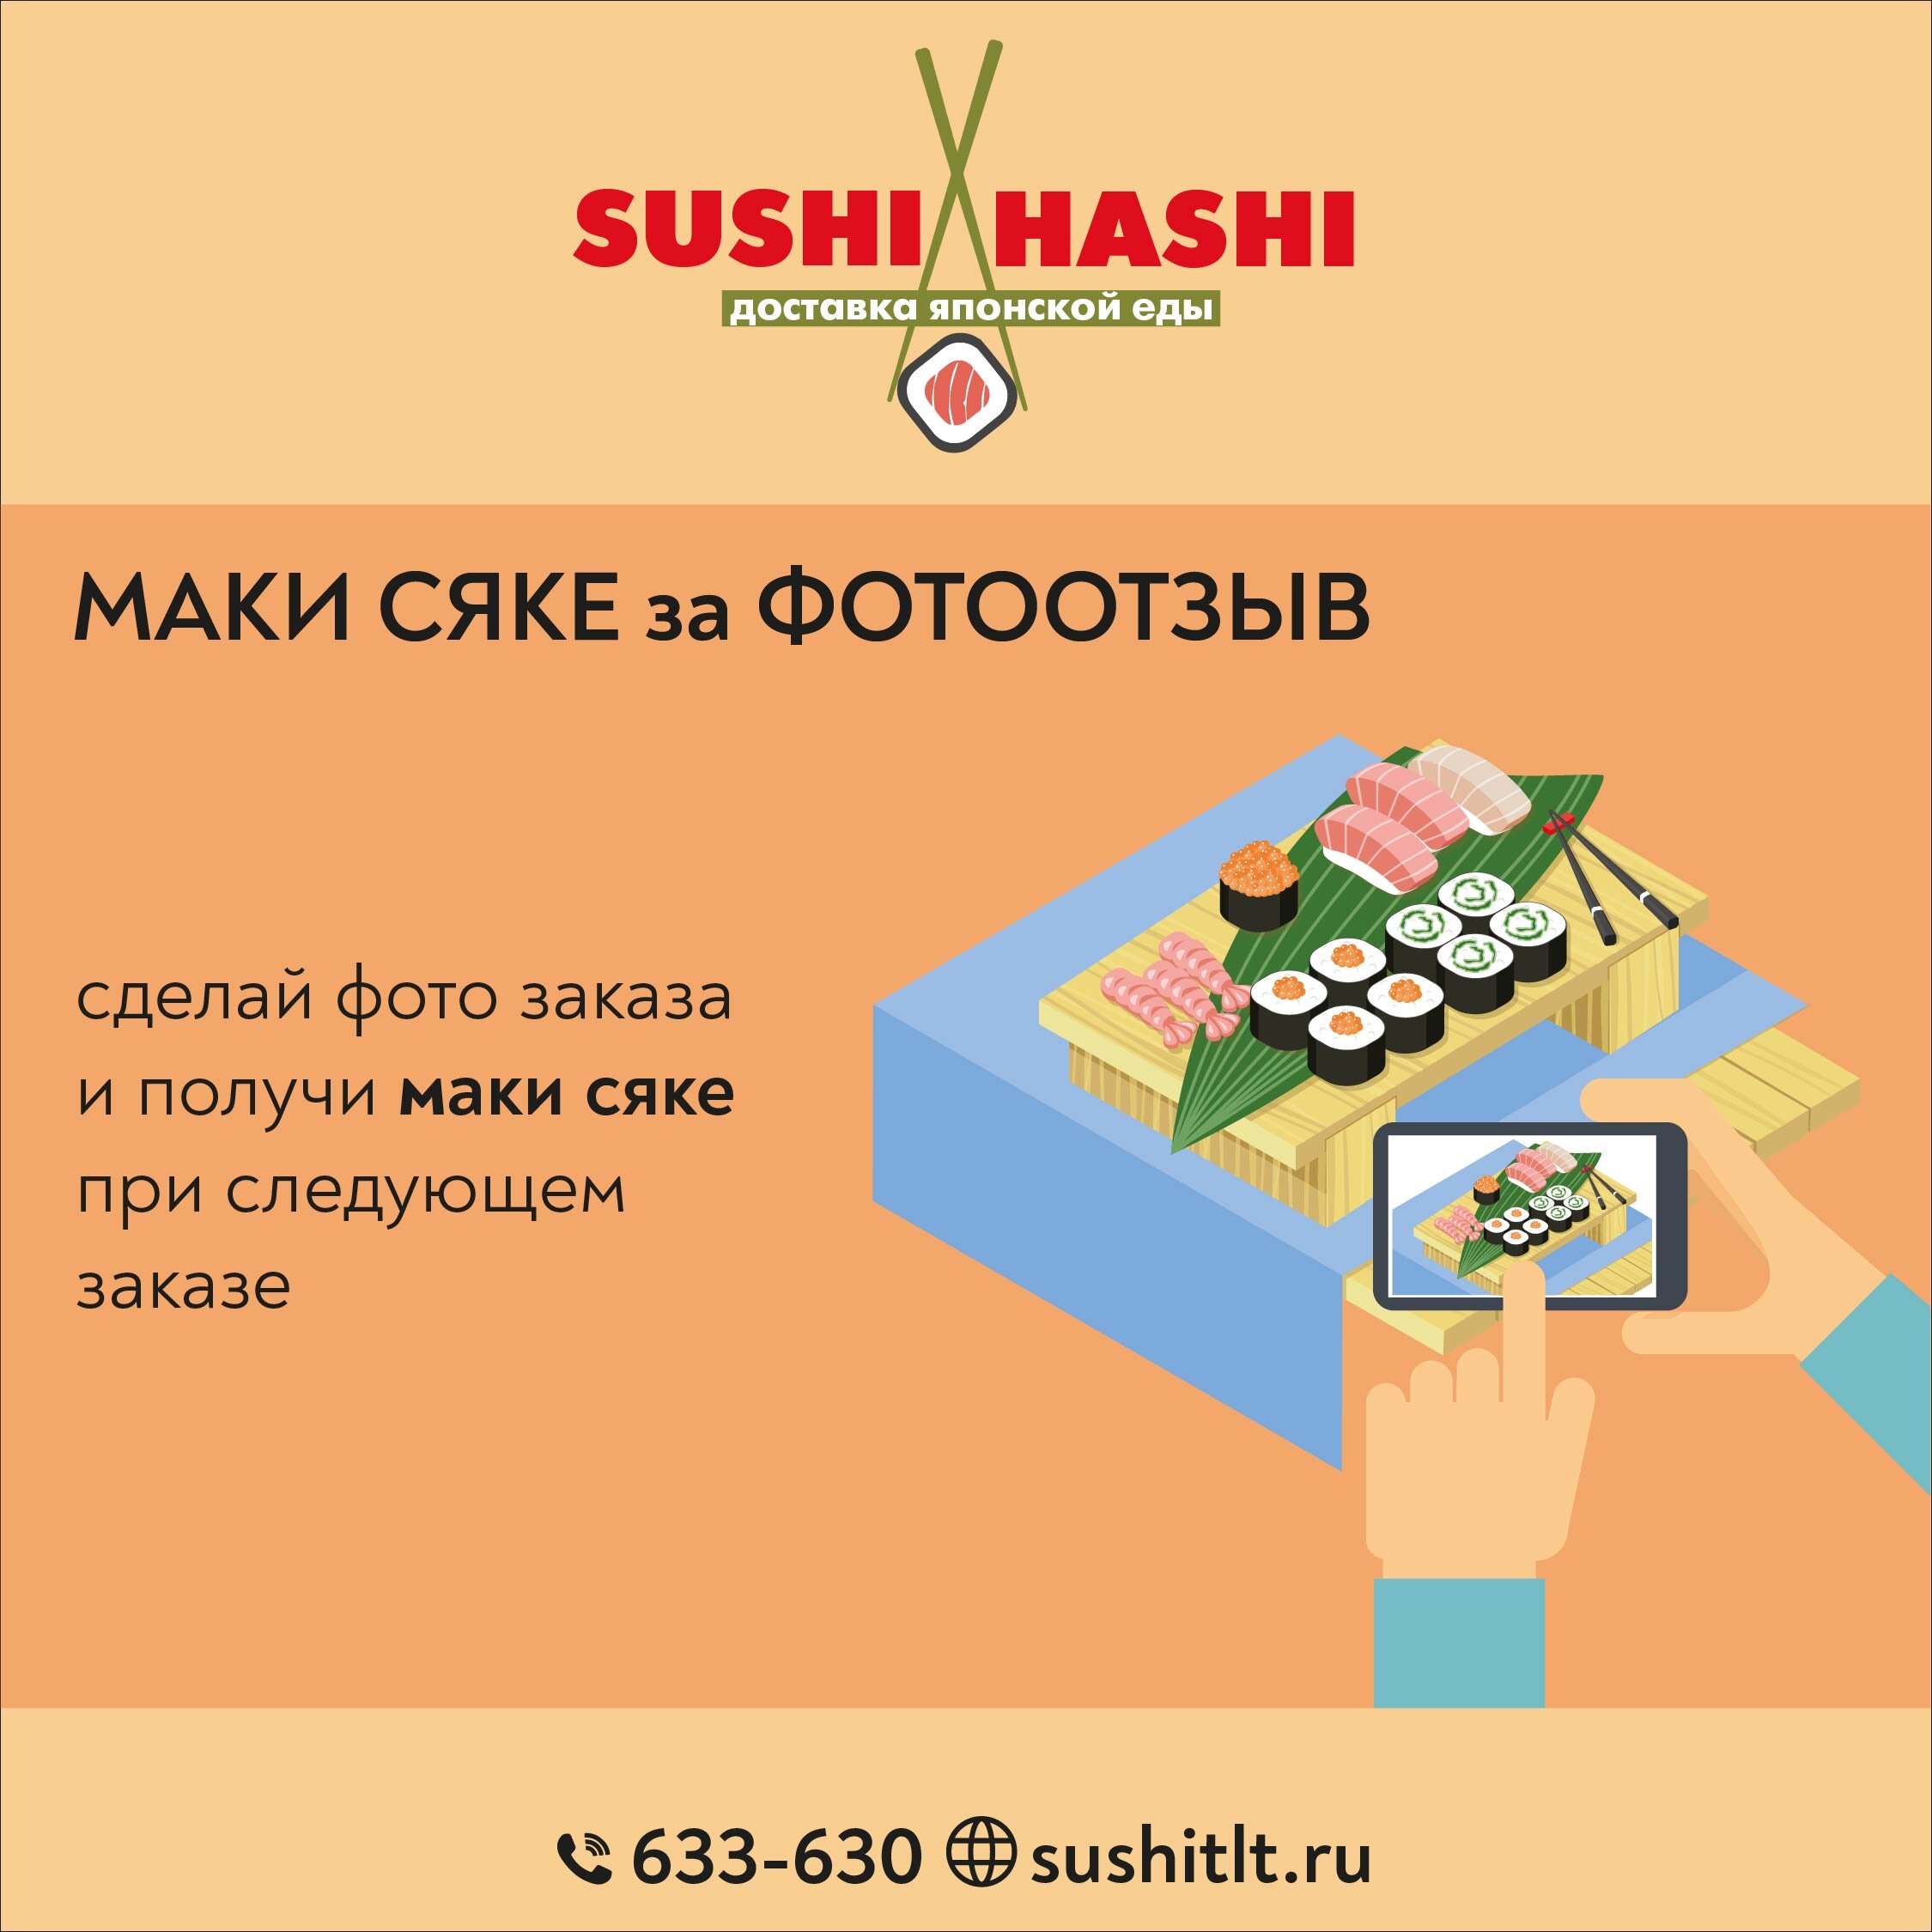 Отзыв о доставки суши в орле фото 47